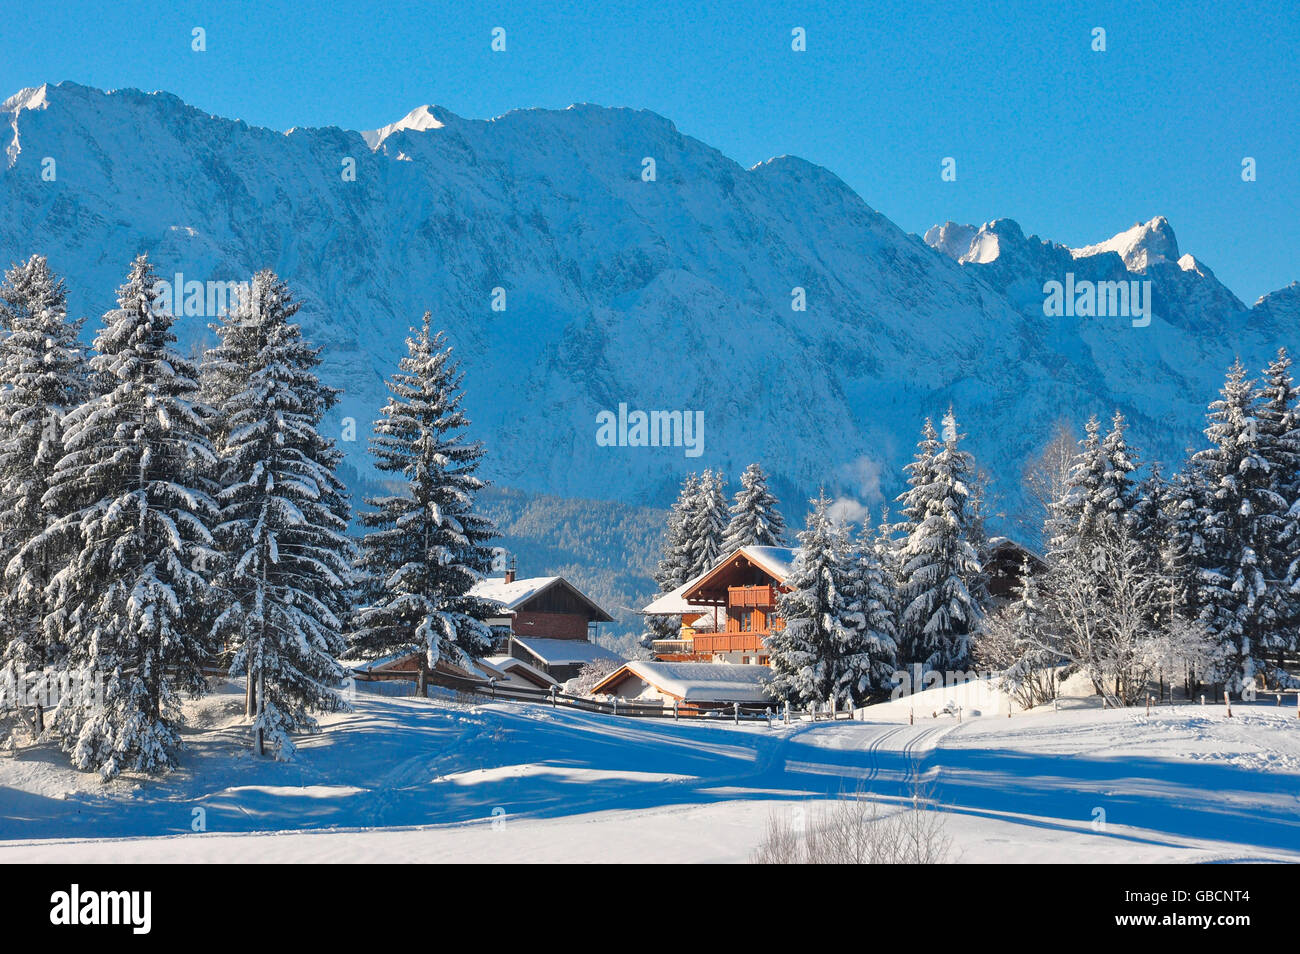 L'hiver, Wohnhaeuser, Karwendelgebirge, Isartal, Bayern, Deutschland, Werdenfels Banque D'Images